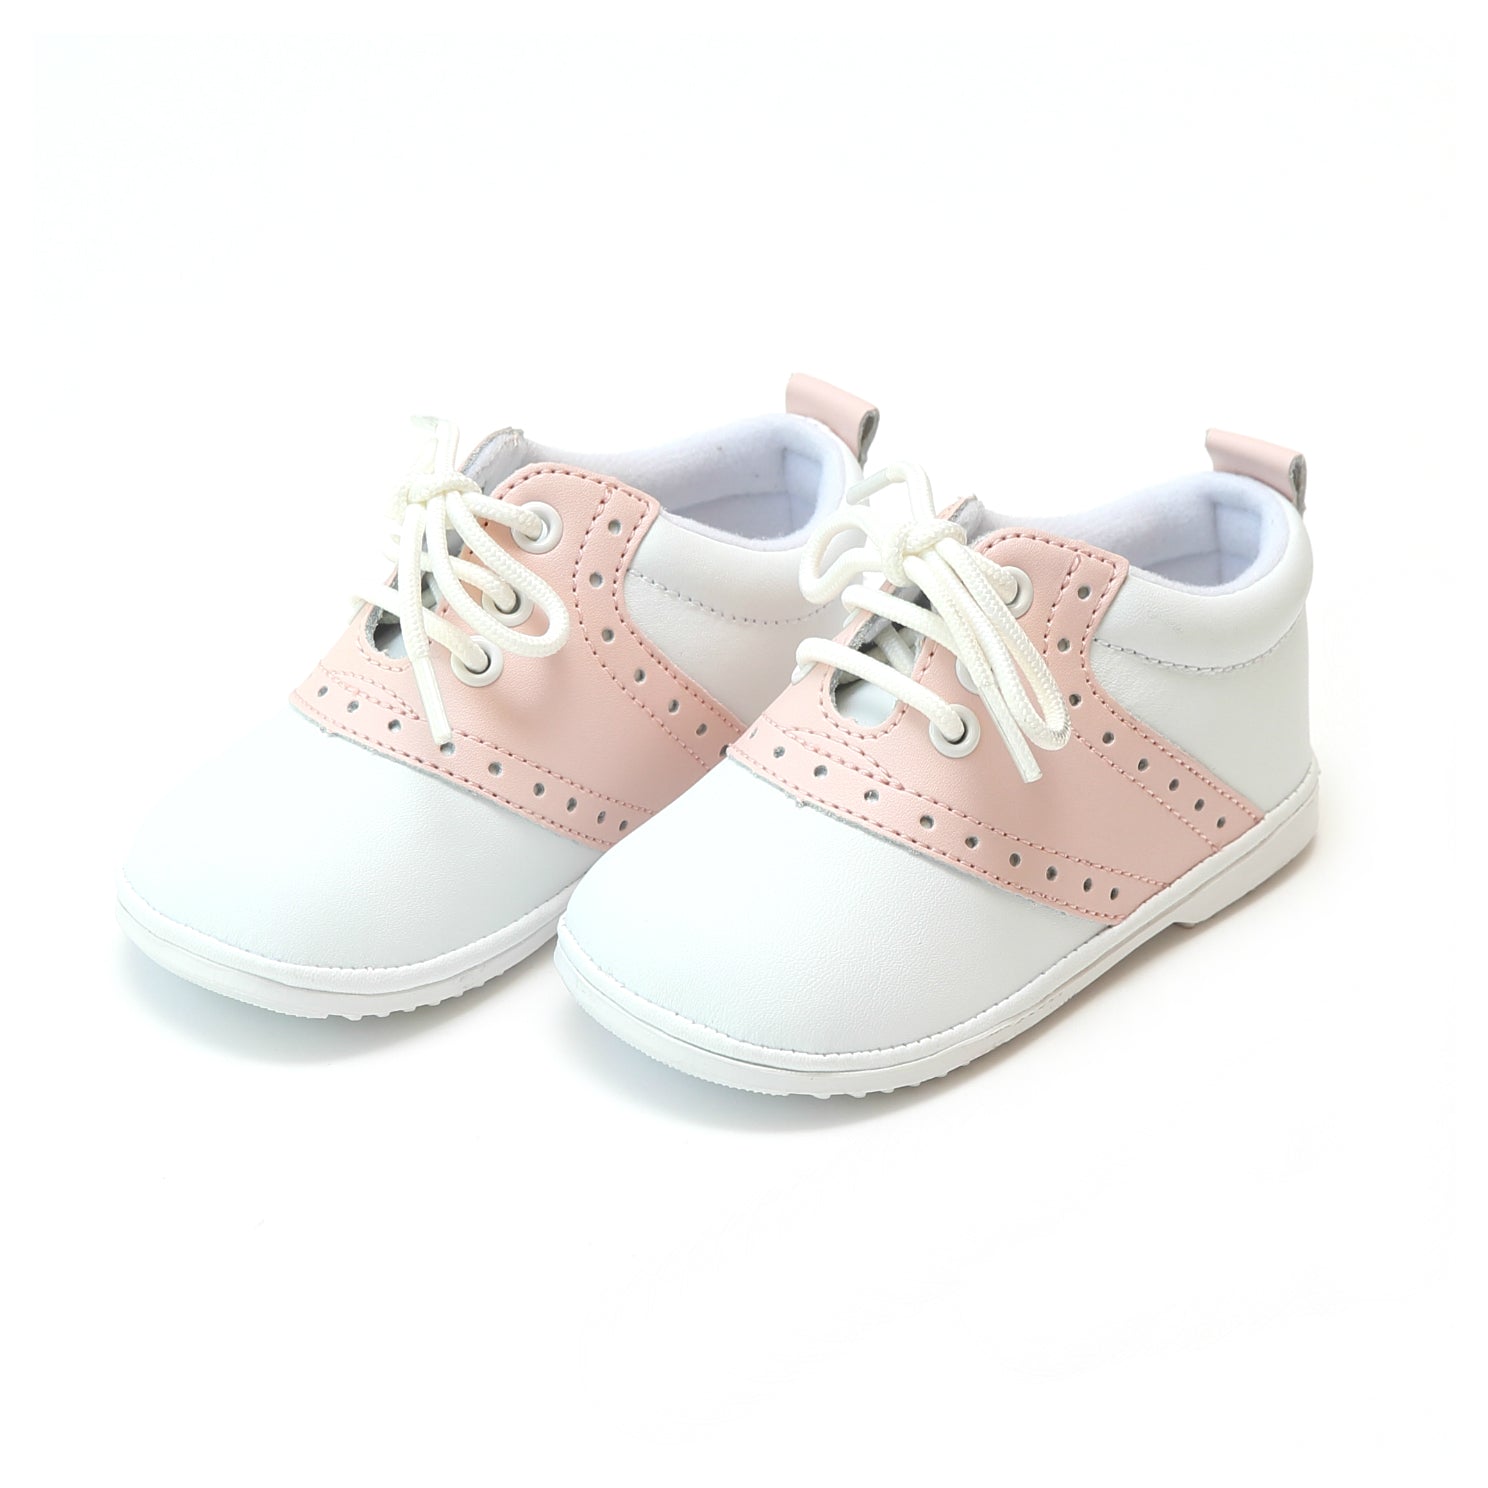 Addie Pink Saddle Oxford Shoe - Babies & Toddlers